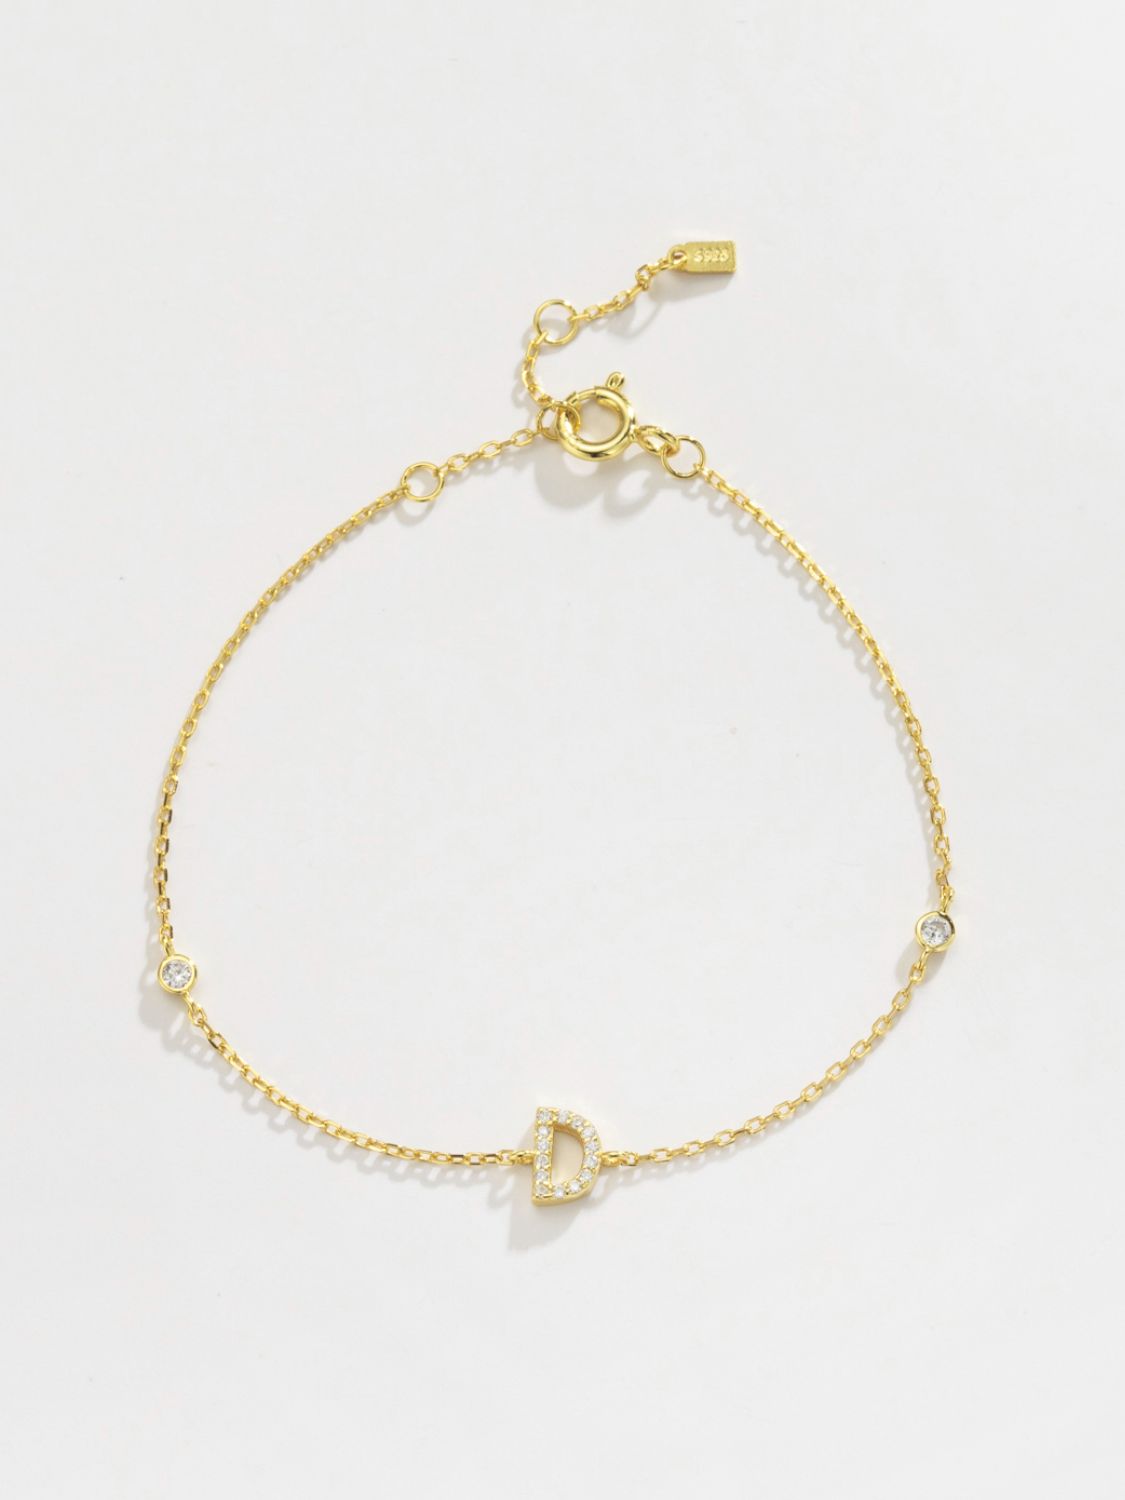 A To F Zircon 925 Sterling Silver Bracelet - Women’s Jewelry - Bracelets - 20 - 2024